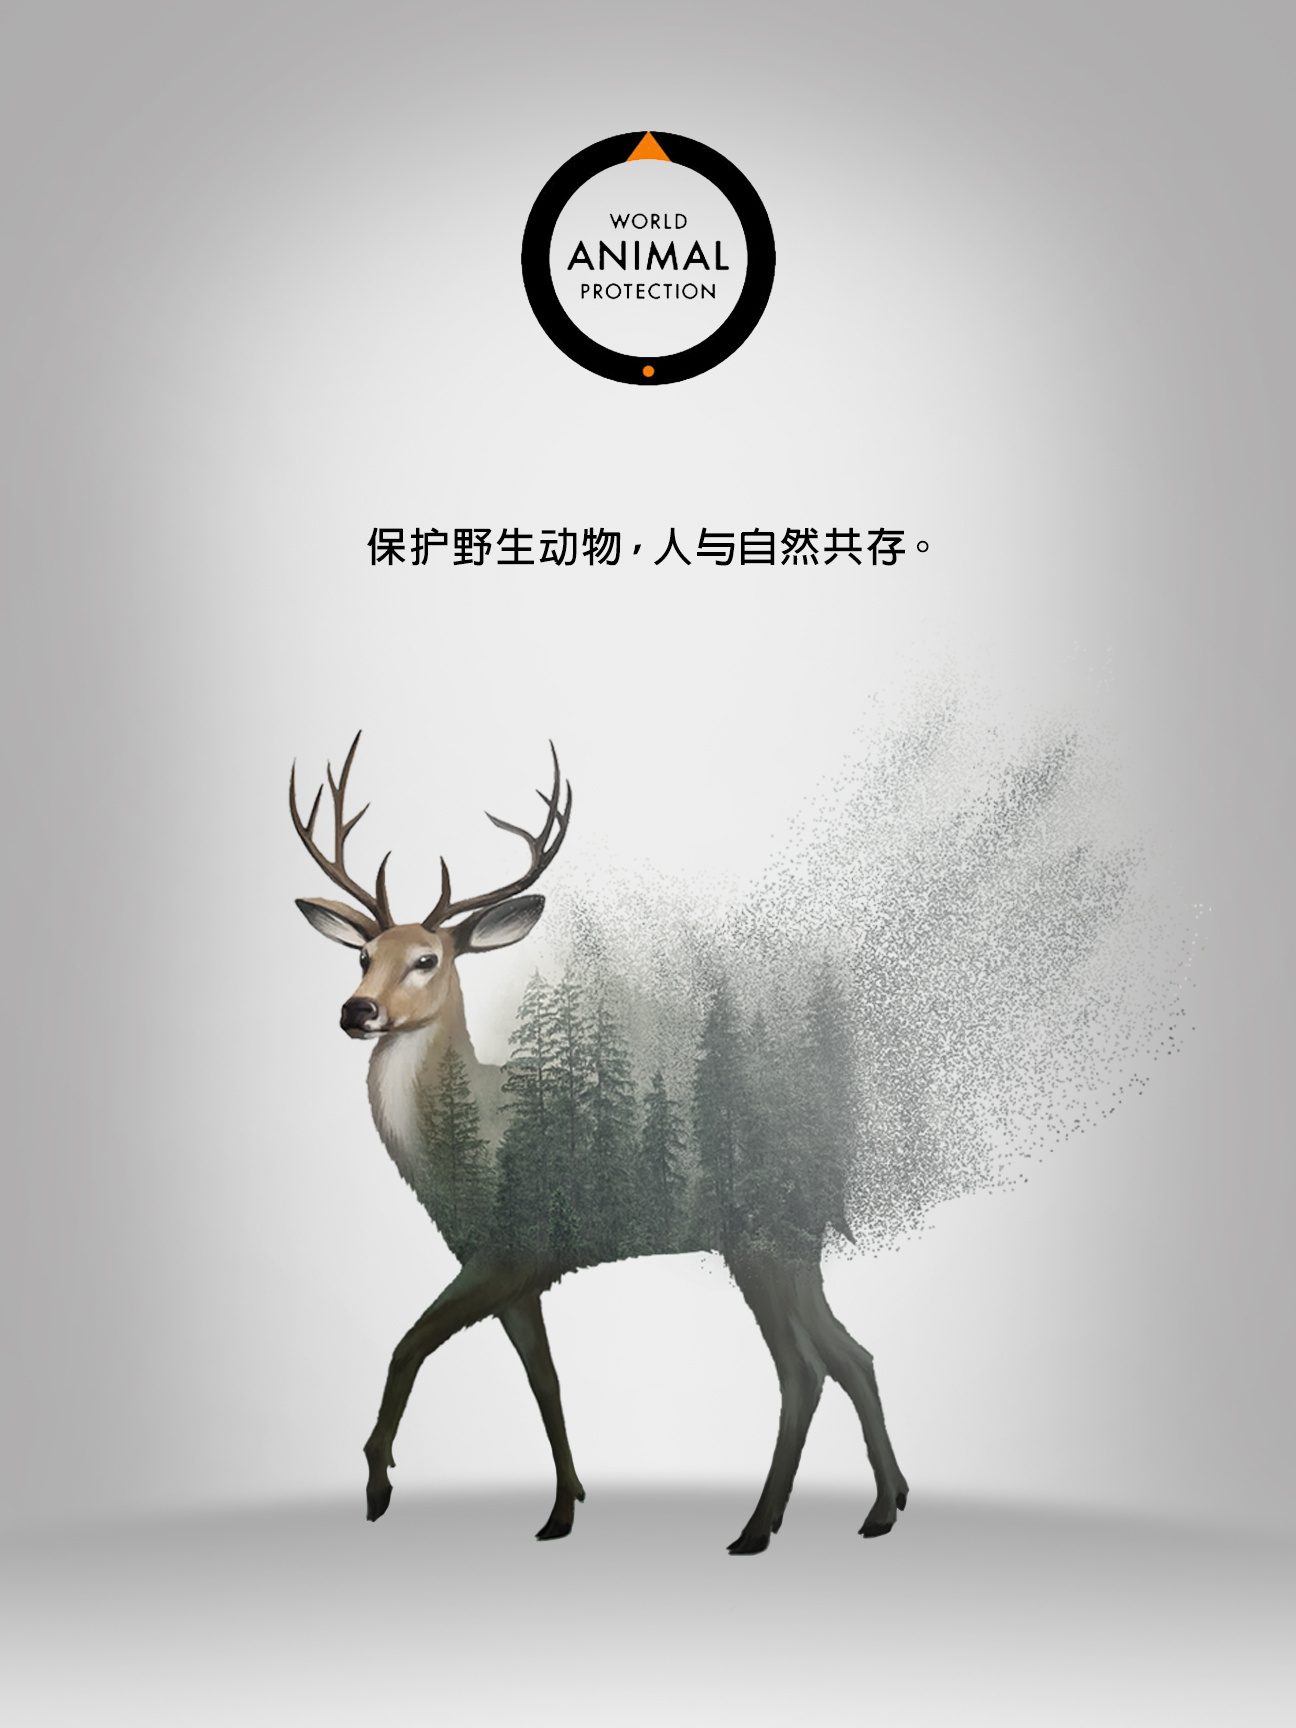 保护动物的广告语图片